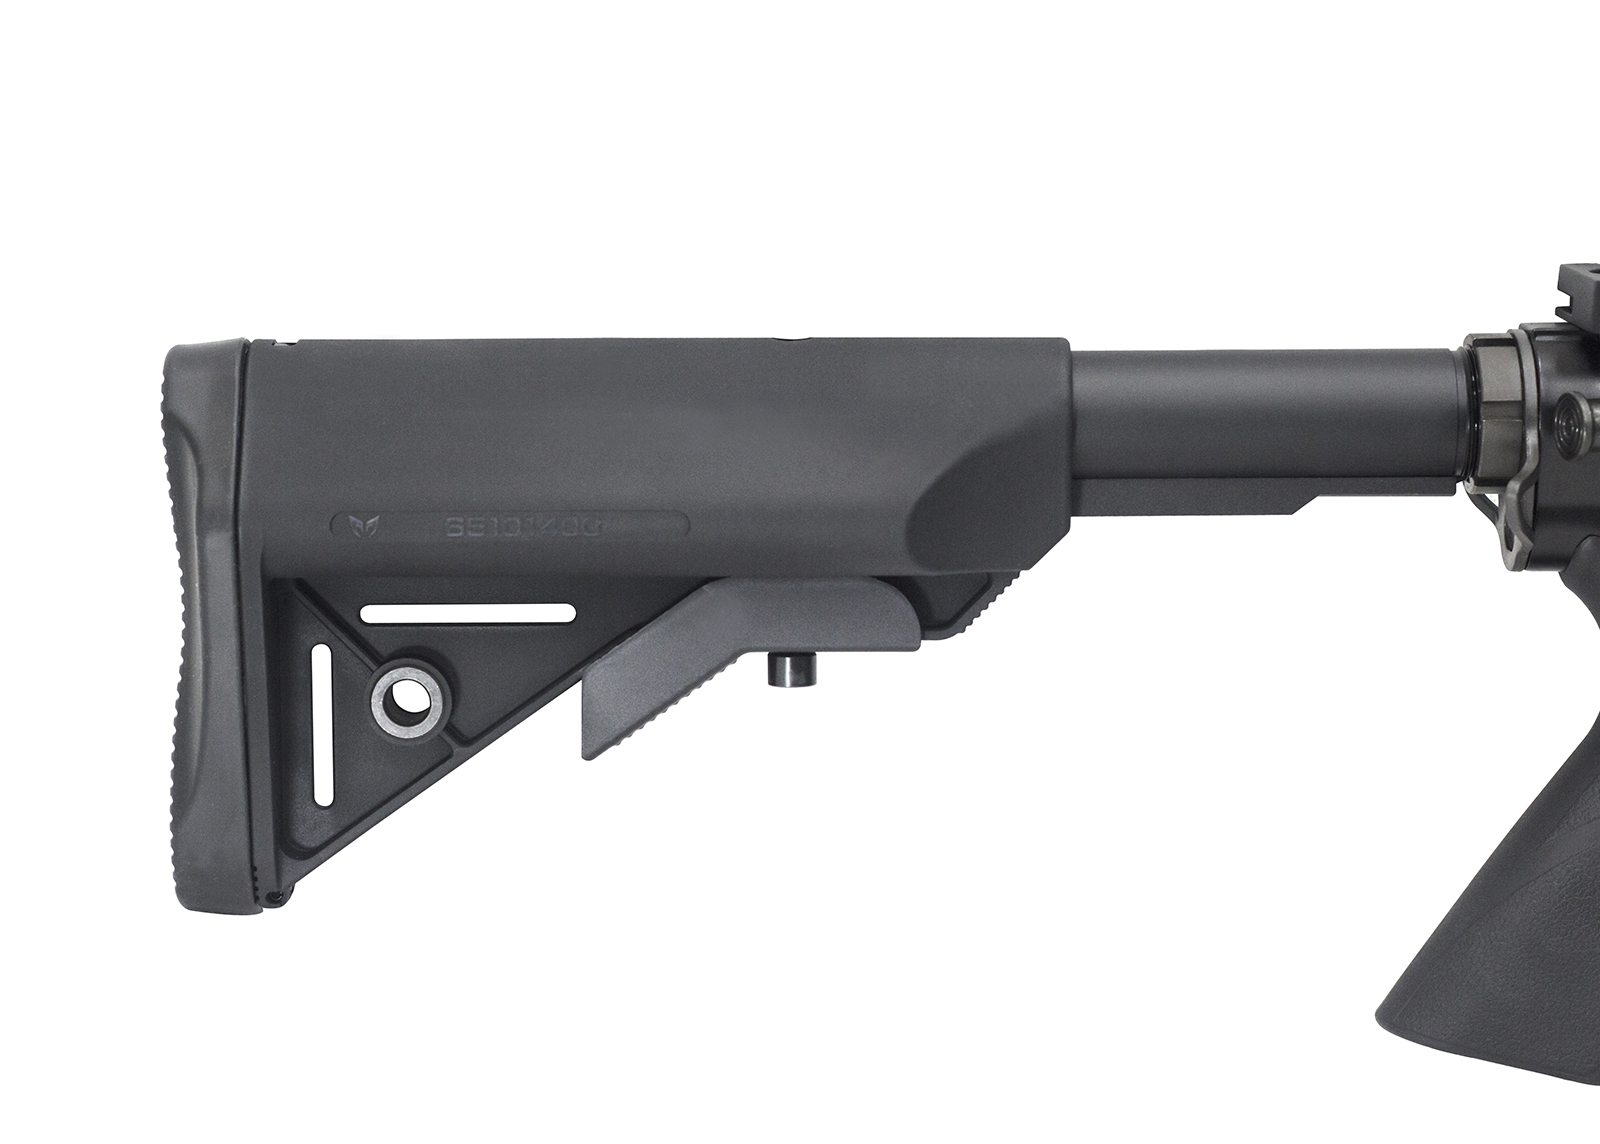 Modify XtremeDuty AR-15 Airsoft AEG Carbine